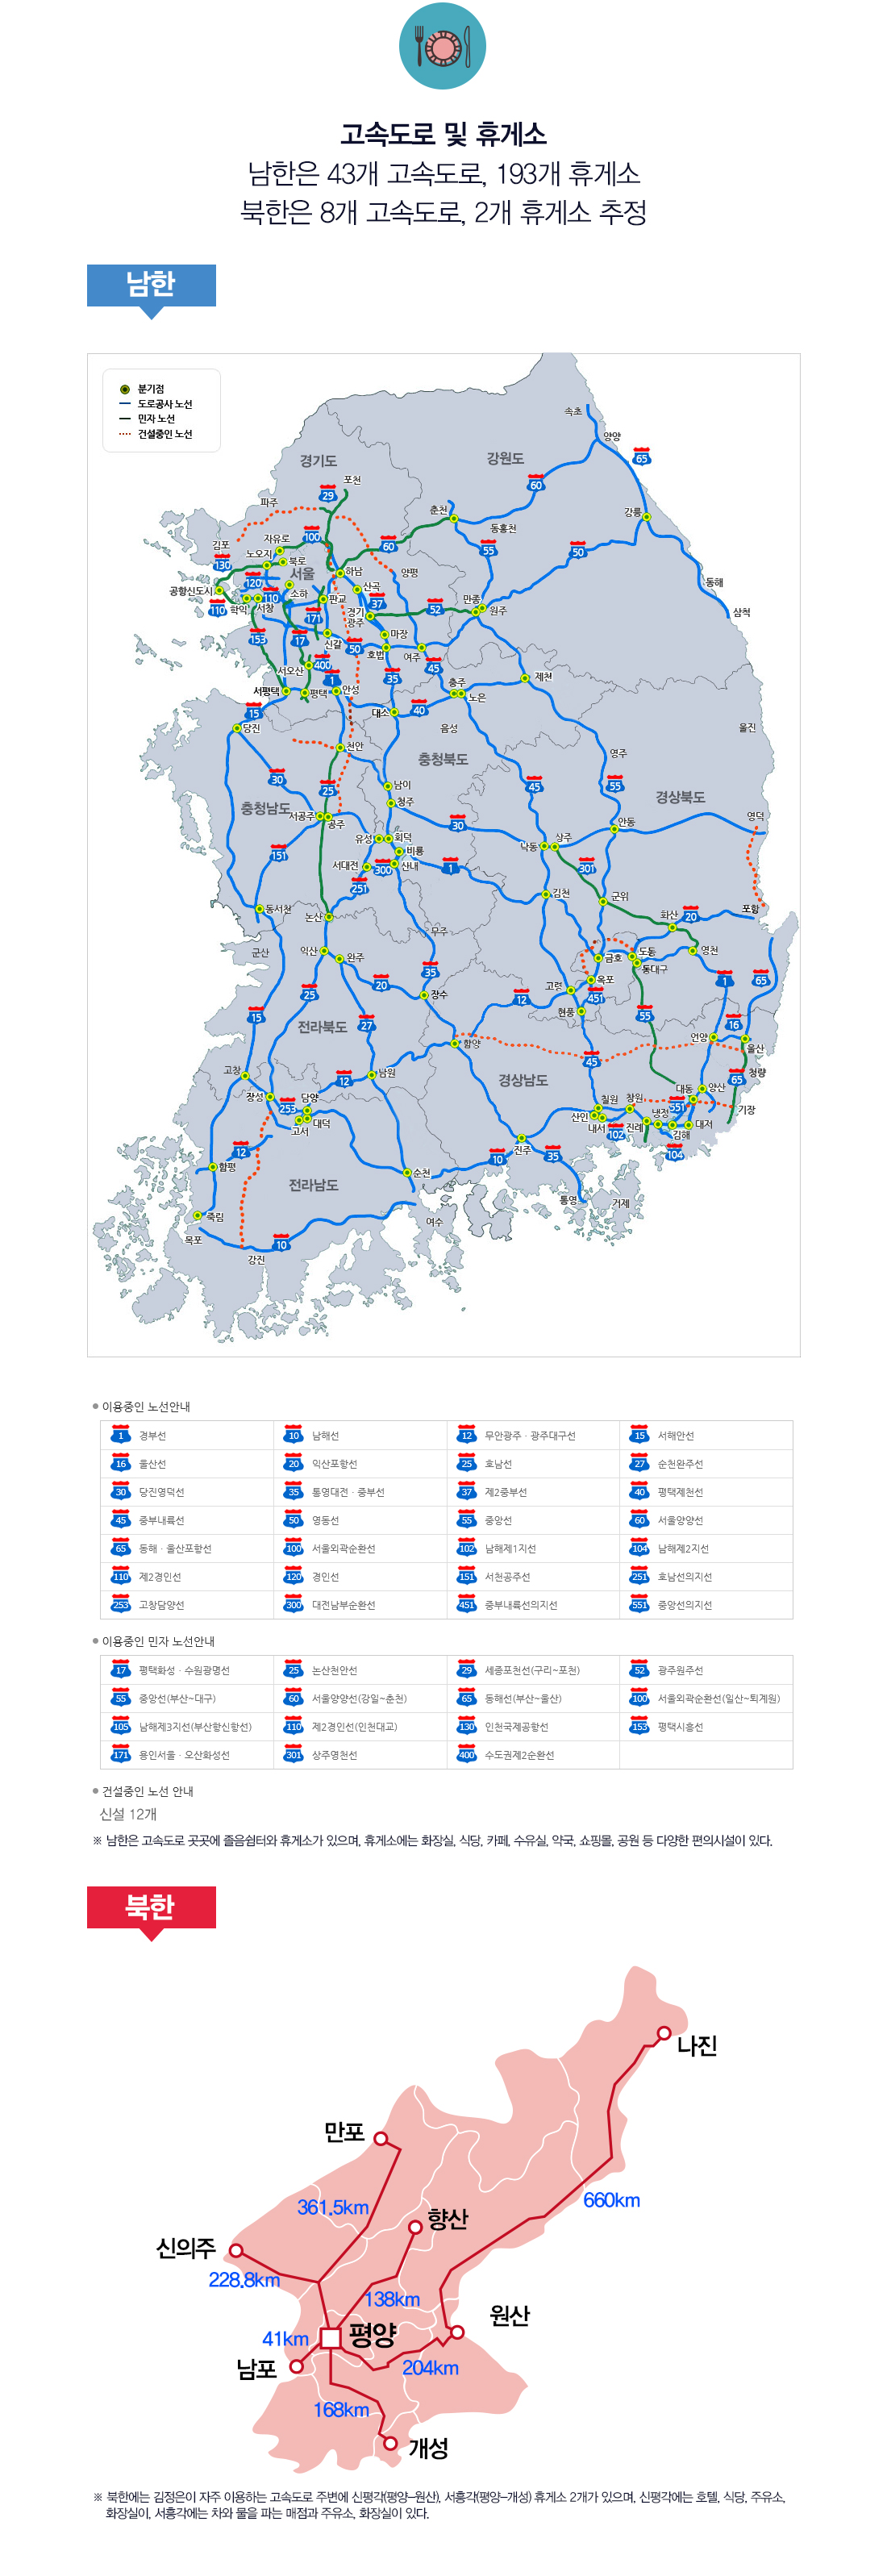 고속도로 및 휴게소 남한은 43개 고속도로, 193개 휴게소 북한은 8개 고속도로, 2개 휴게소 추정 